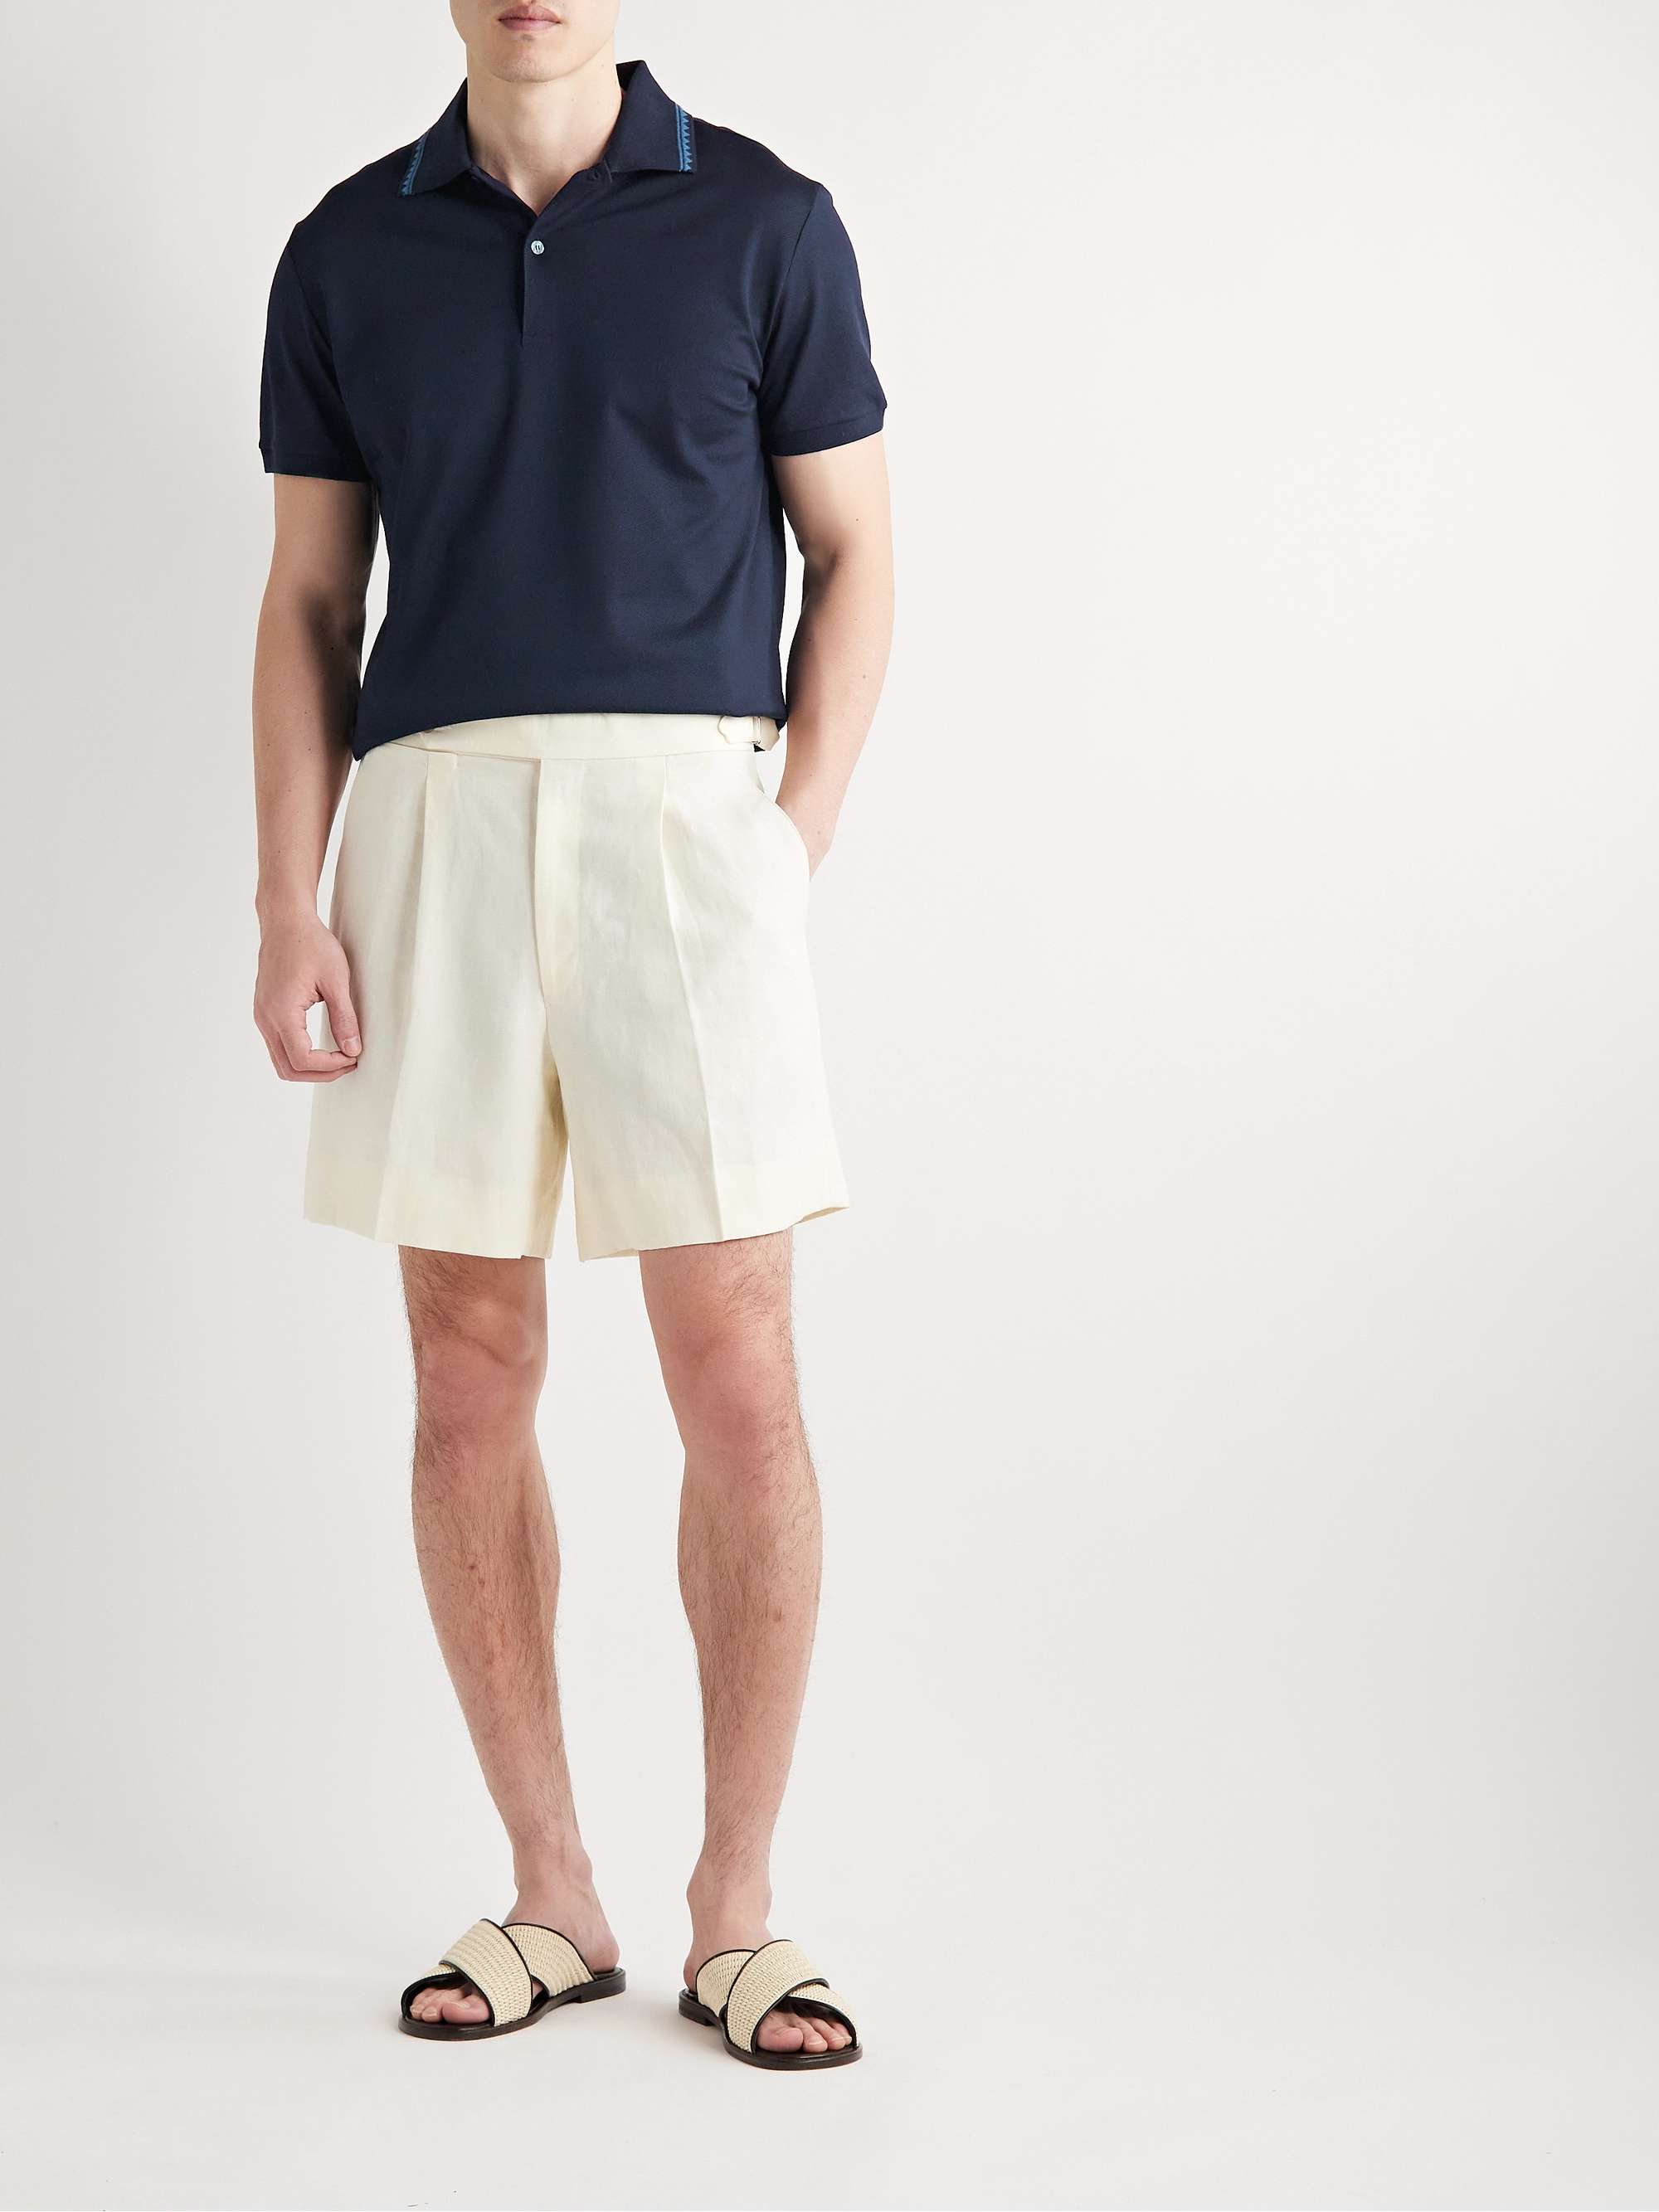 ETRO Printed Cotton-Piqué Polo Shirt for Men | MR PORTER